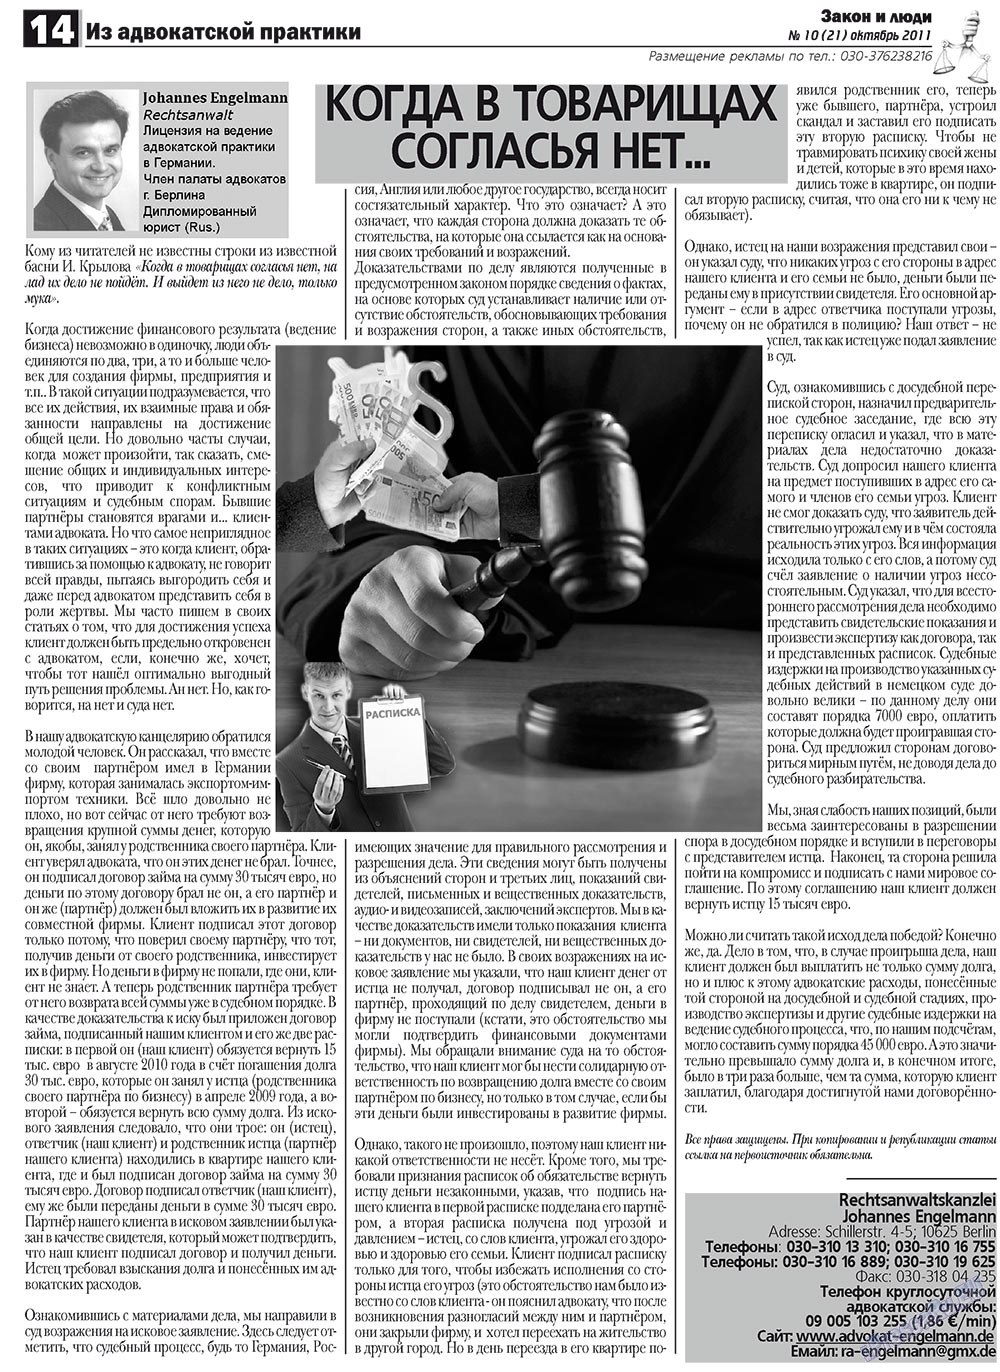 Закон и люди (газета). 2011 год, номер 10, стр. 14